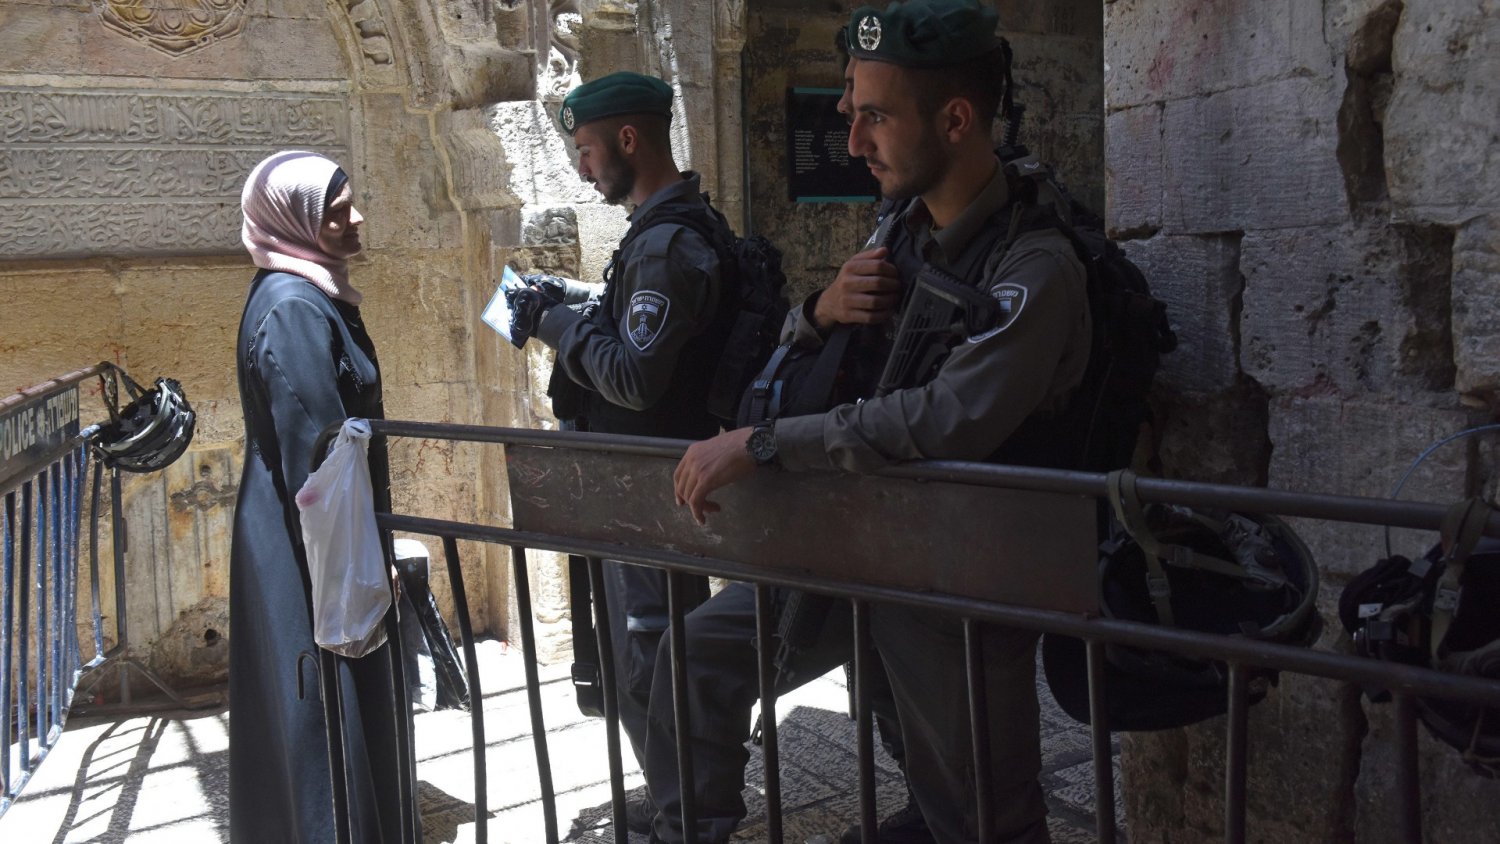 An Israeli border policeman checks the ID card of a Muslim woman leaving the al-Aqsa Mosque.